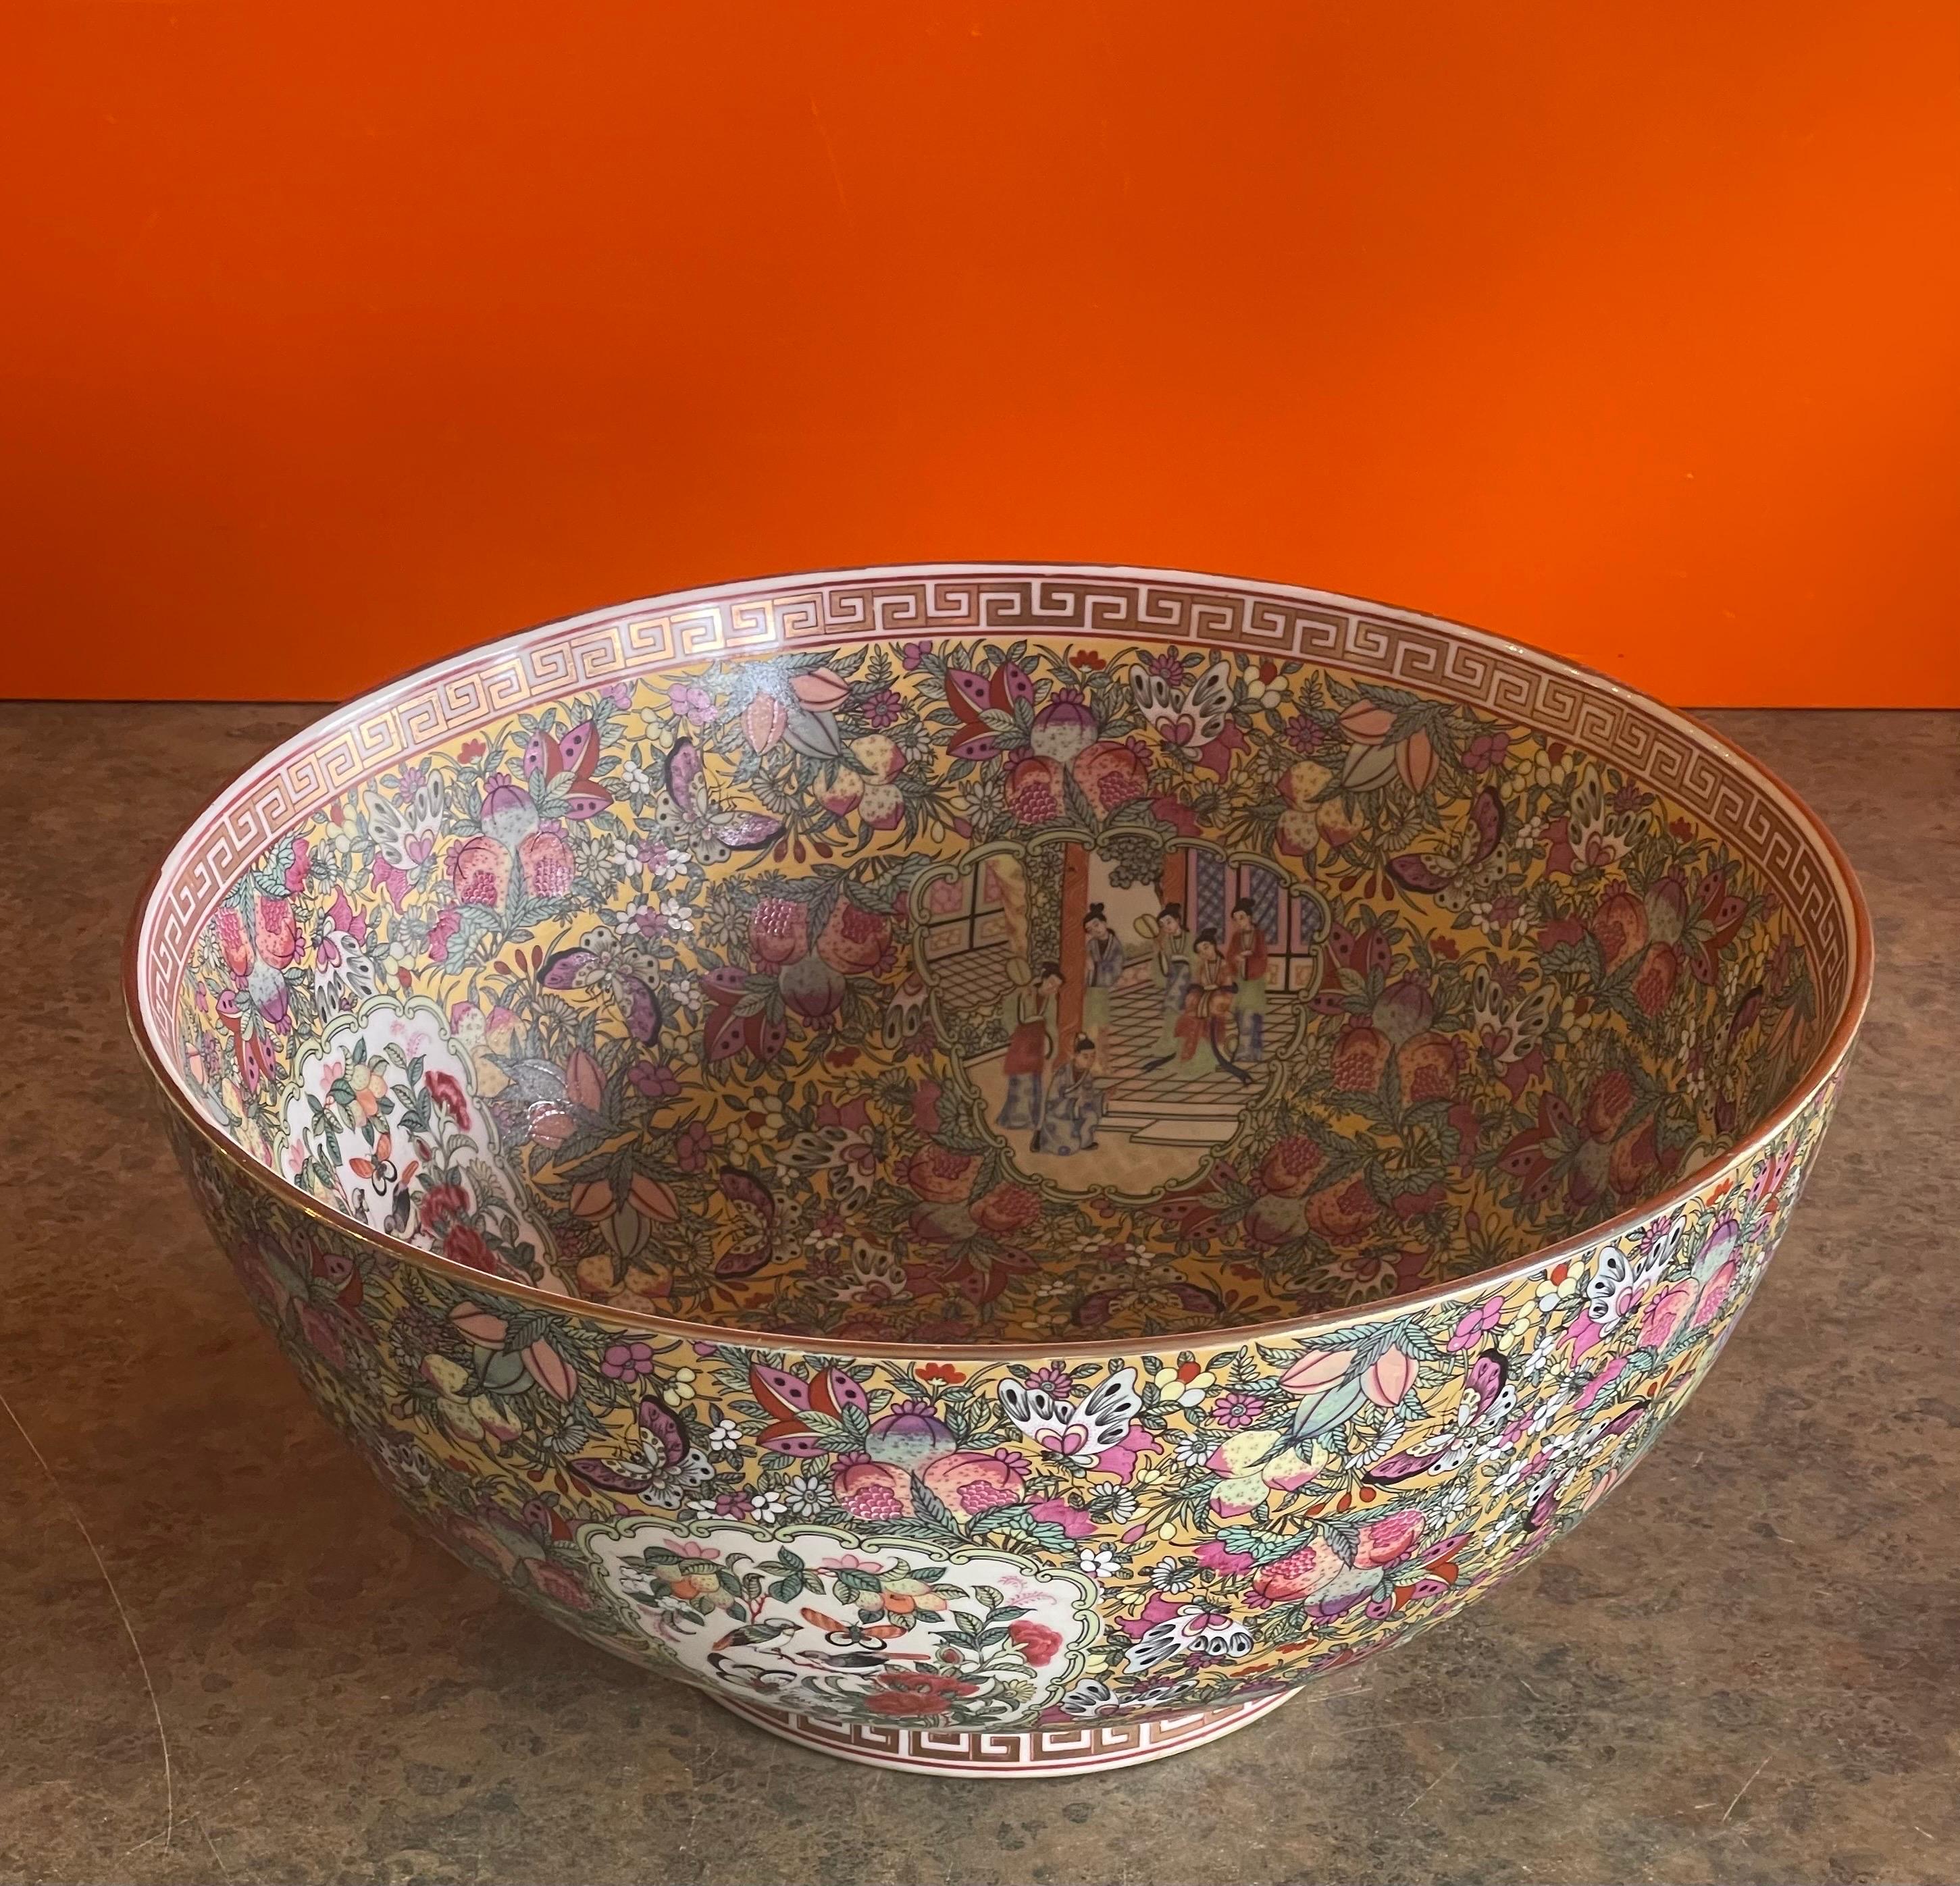 Grand bol en porcelaine d'exportation chinoise, peint à la main et orné d'un médaillon en forme de rose, vers le début des années 1950. Ce magnifique bol présente un merveilleux design traditionnel et est en très bon état, sans éclats ni fissures.